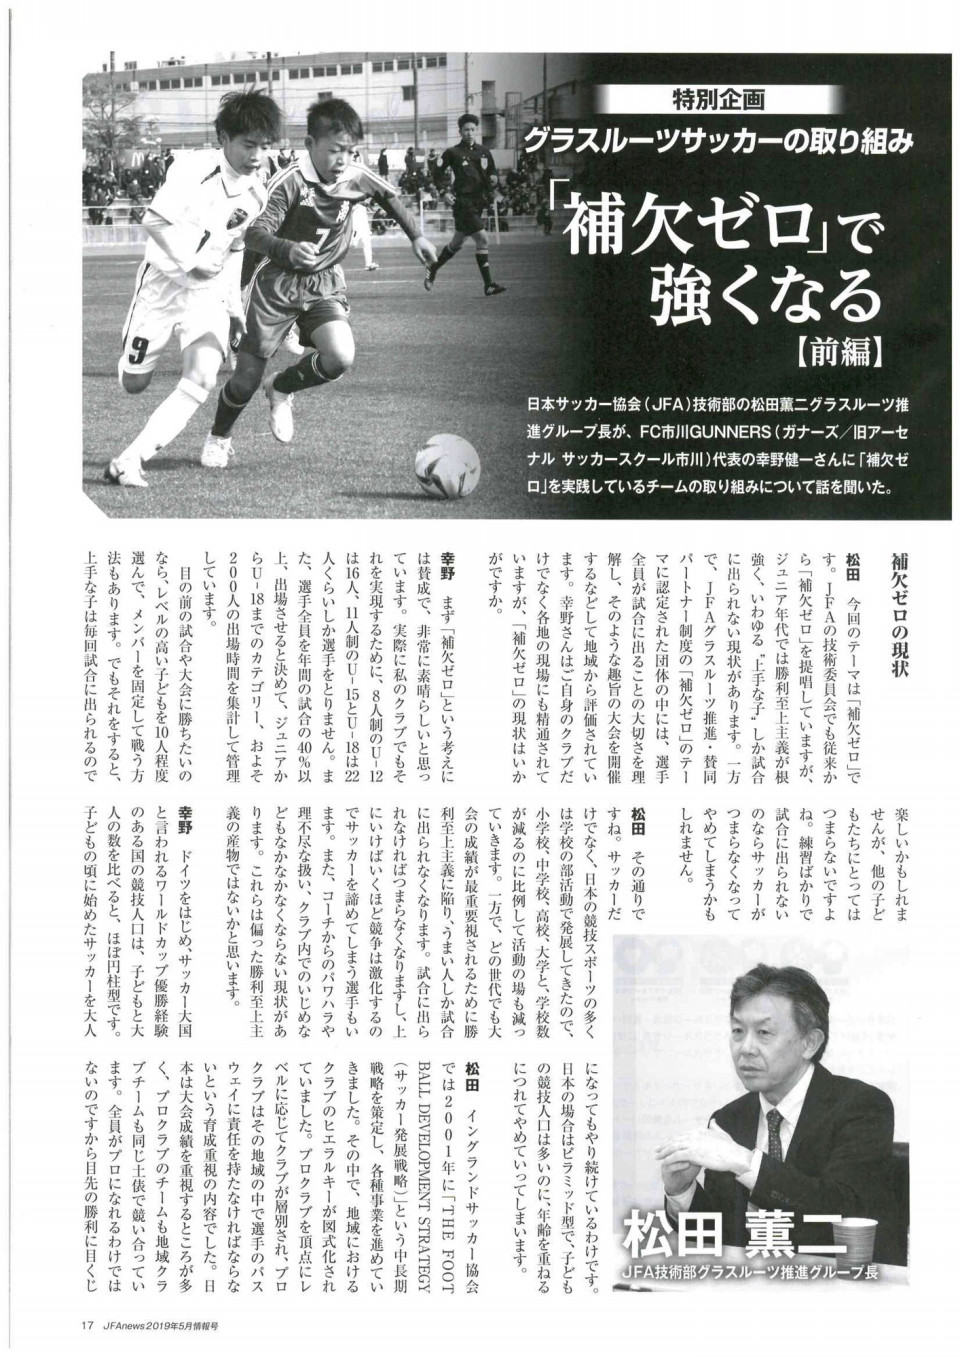 幸野健一さんとの出会い U12 一般社団法人 Rondo Soccer Club